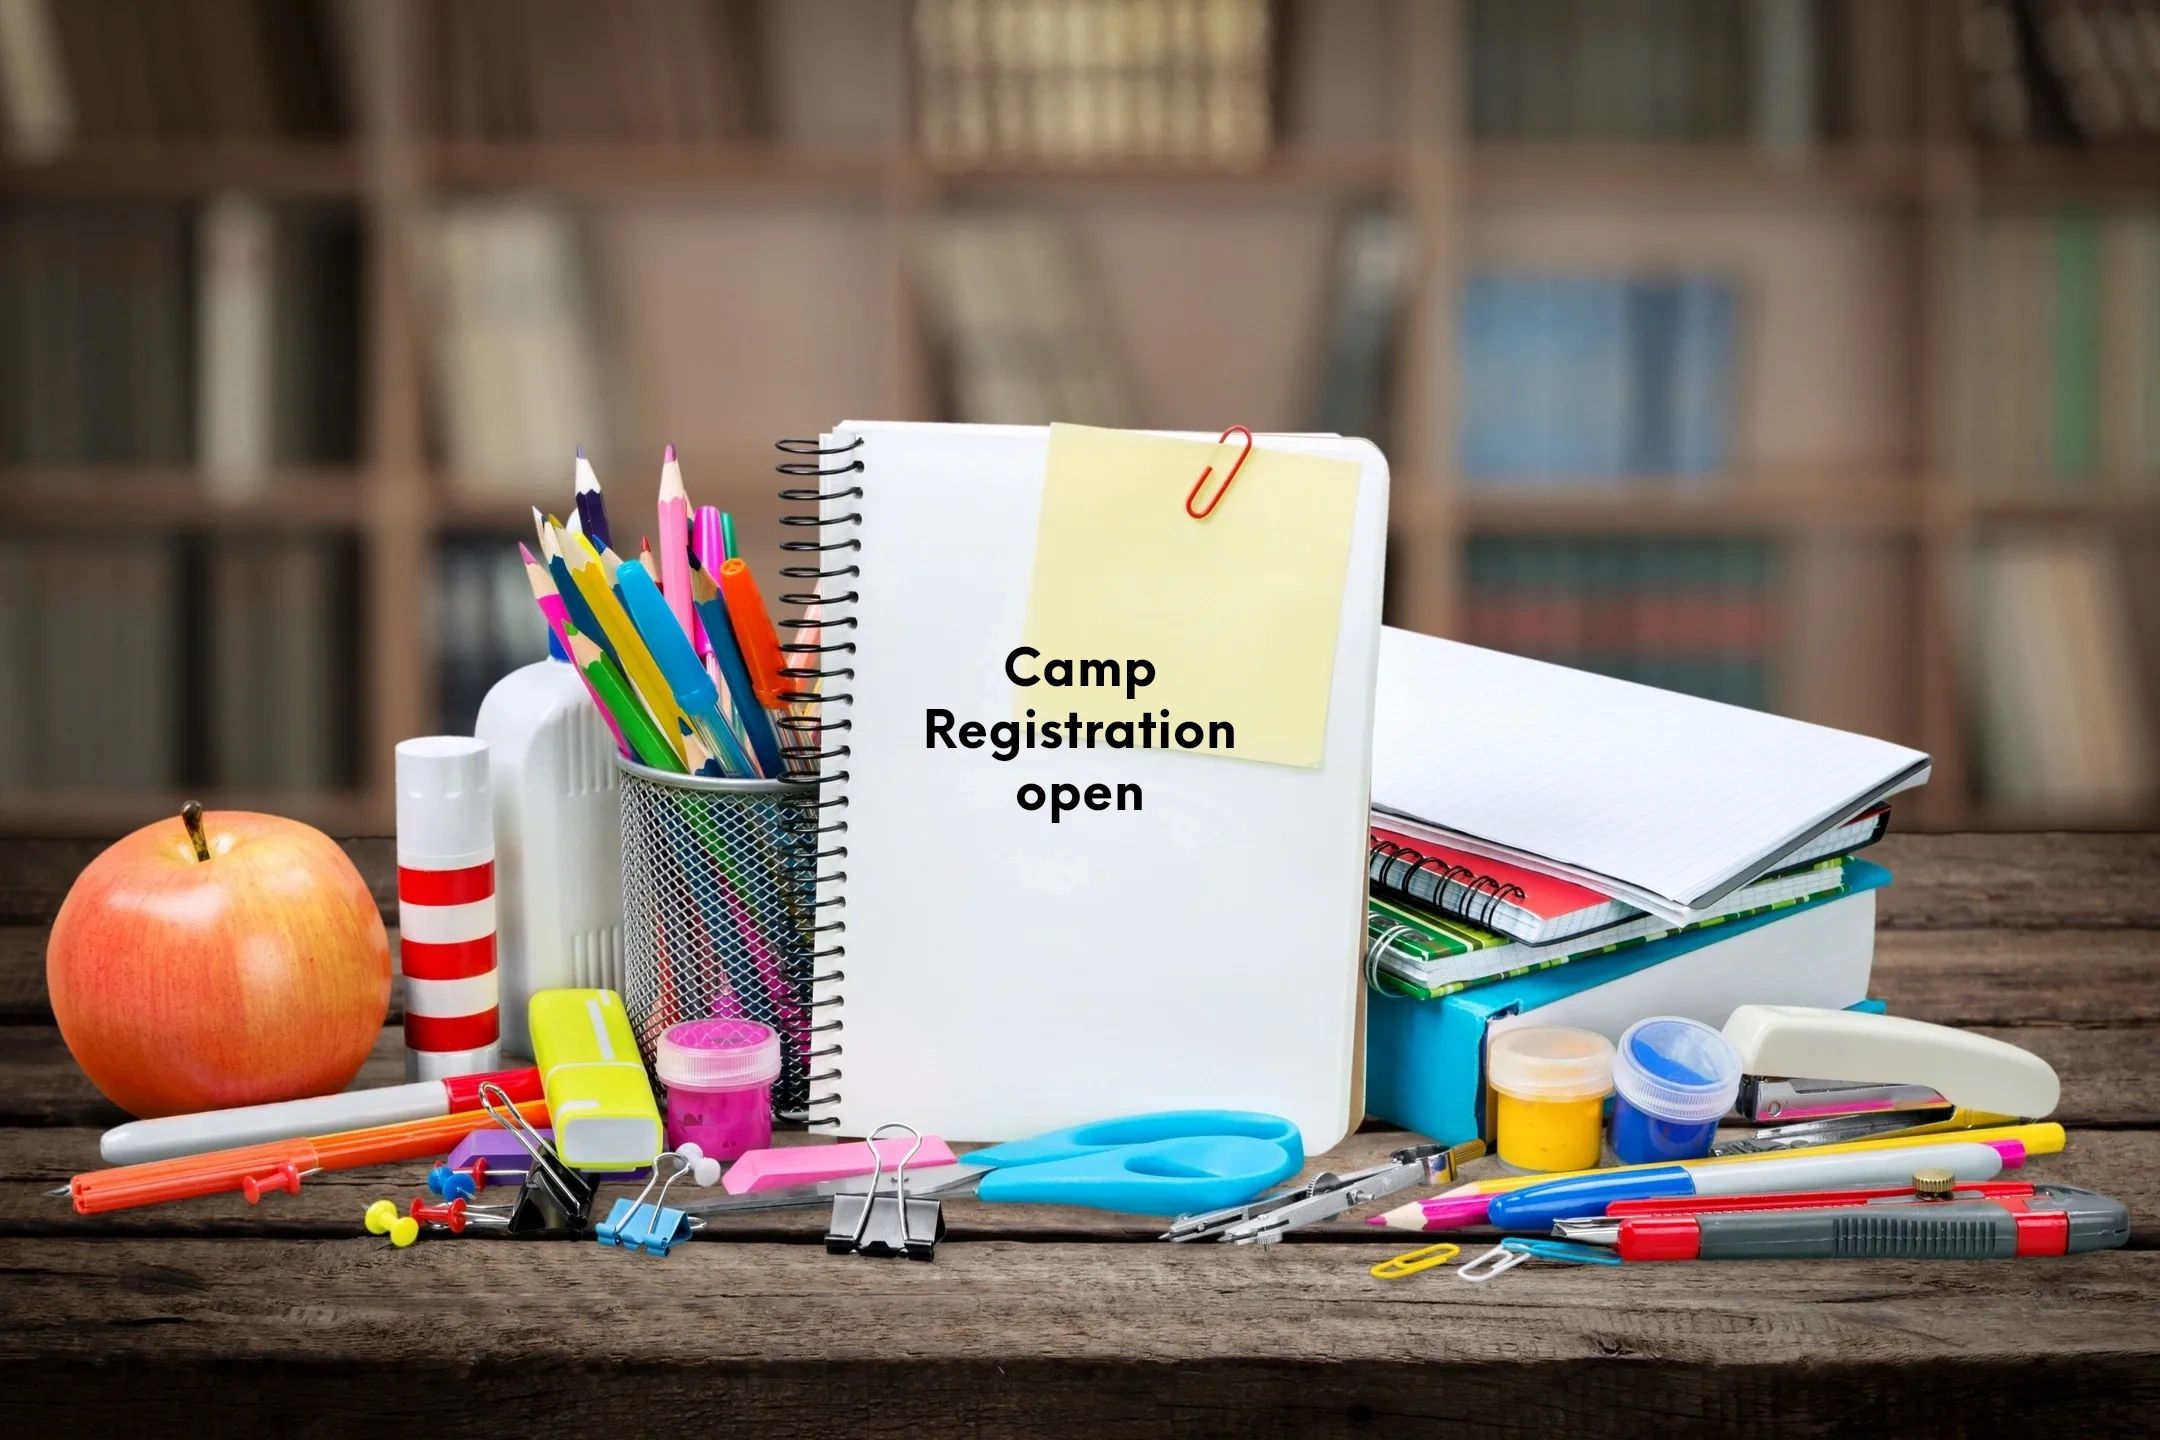 Camp Registration